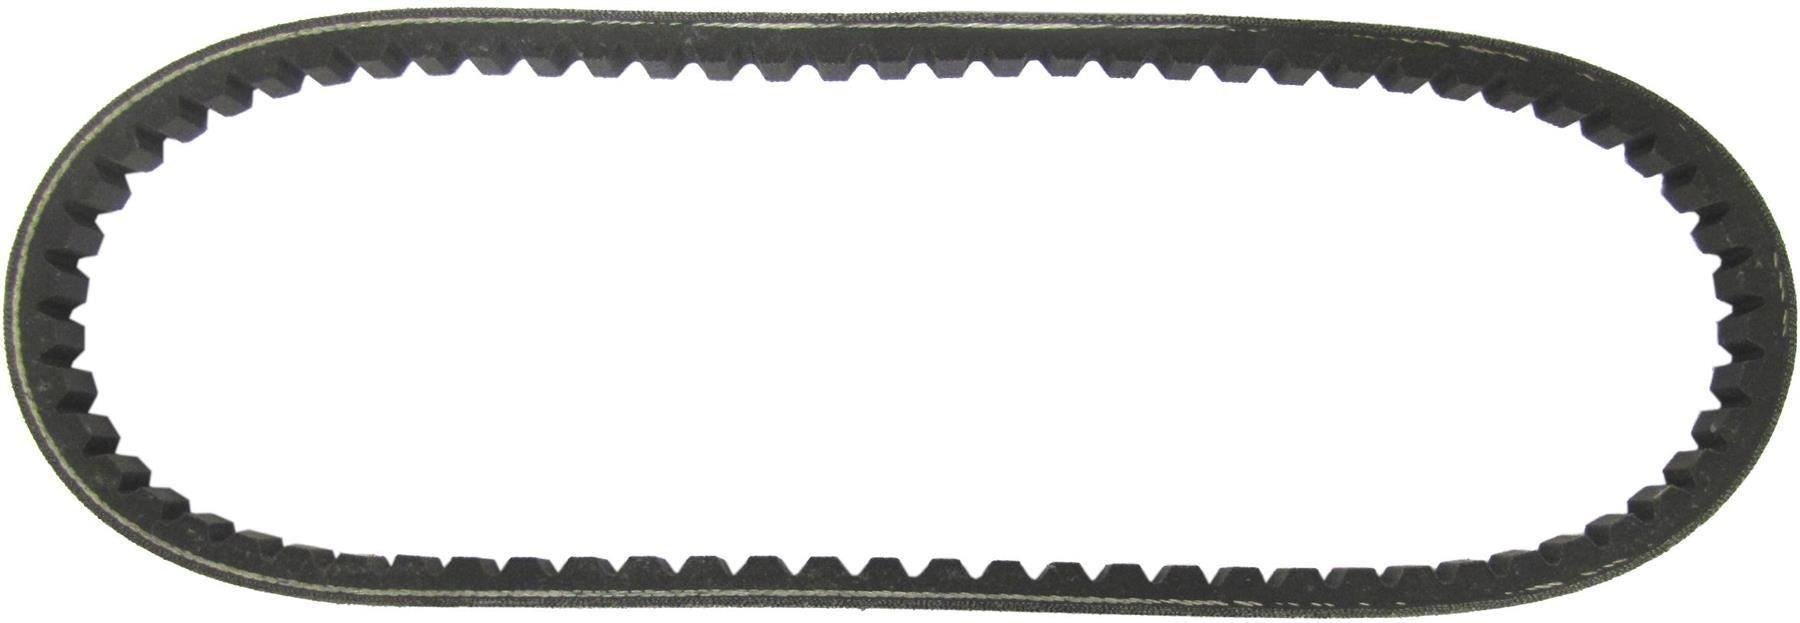 Kymco ZX 50 2000-2003 Drive Belt